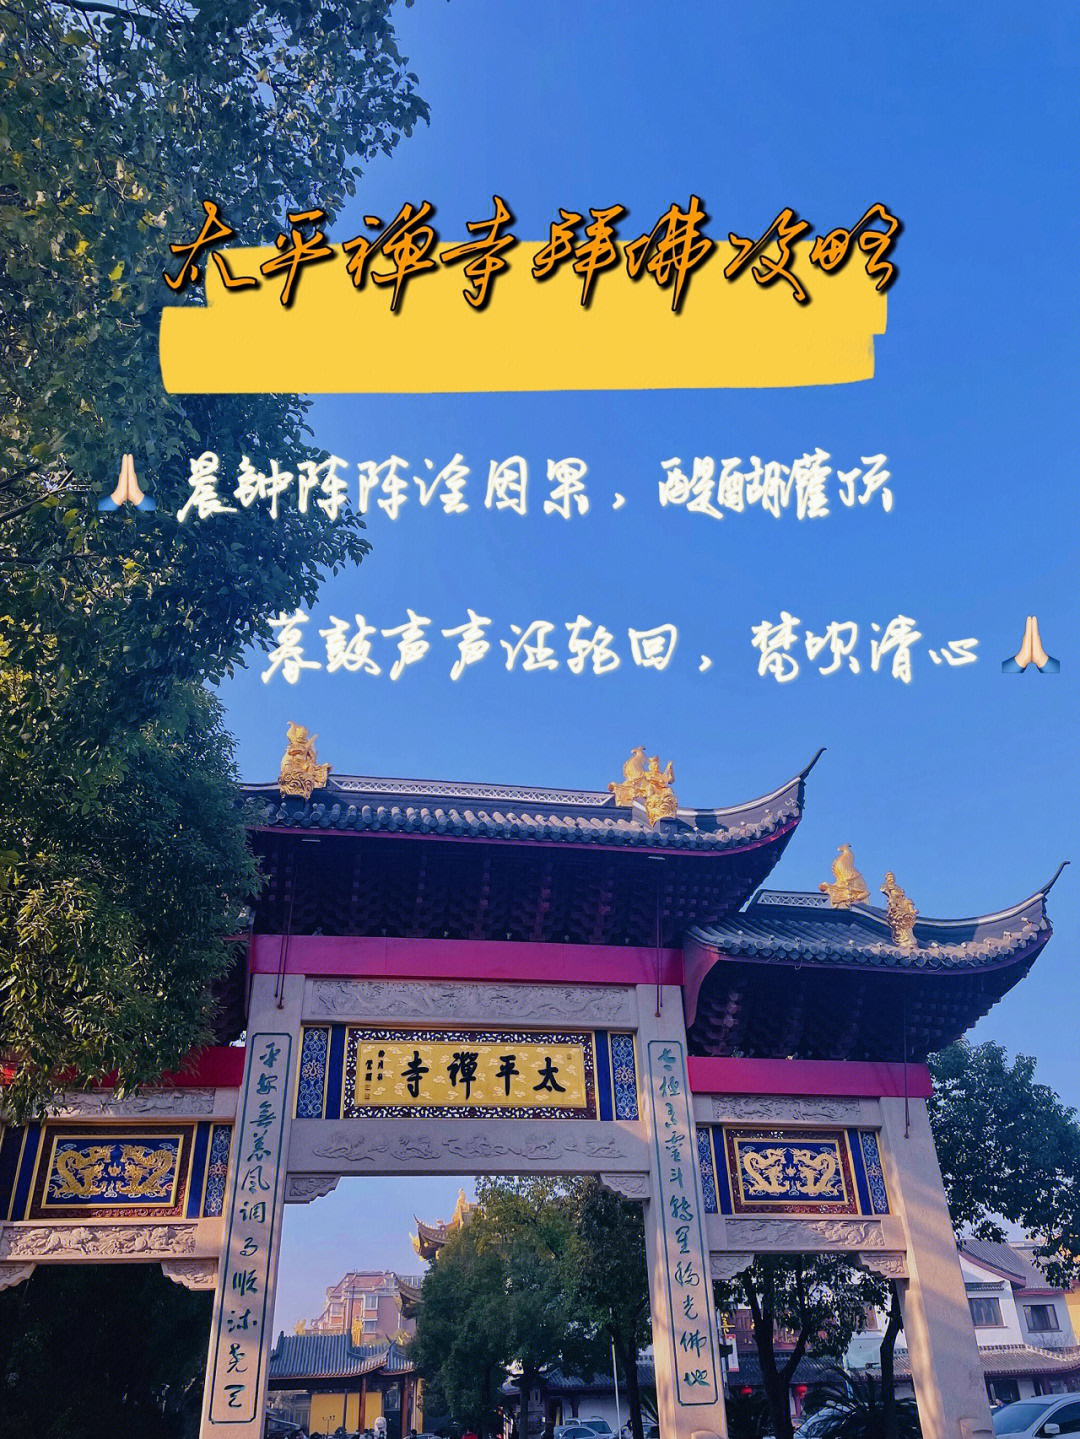 上海周末太平禅寺梵呗清心